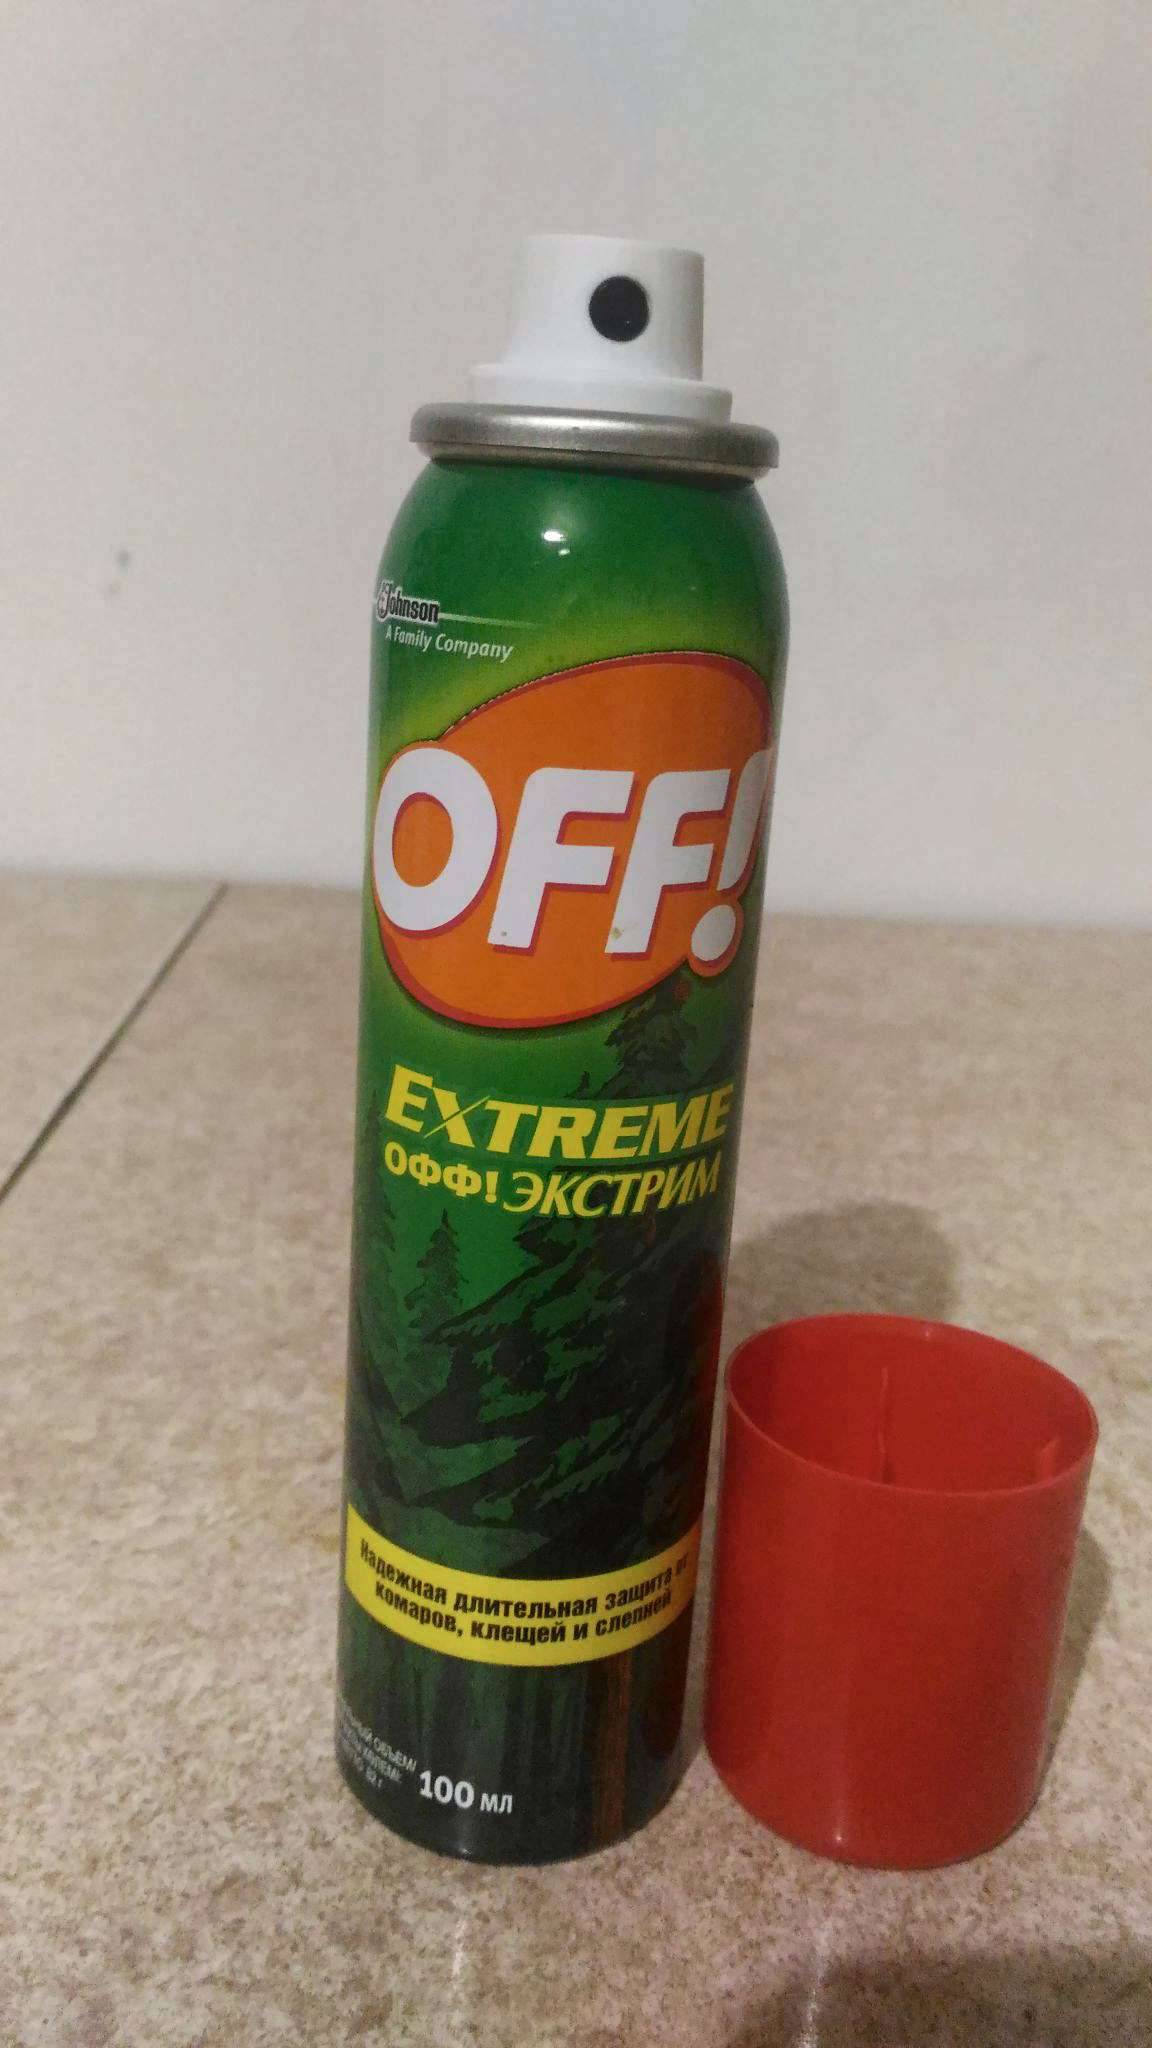 Off! (офф) extreme аэрозоль от комаров, клещей, слепней, 100 мл